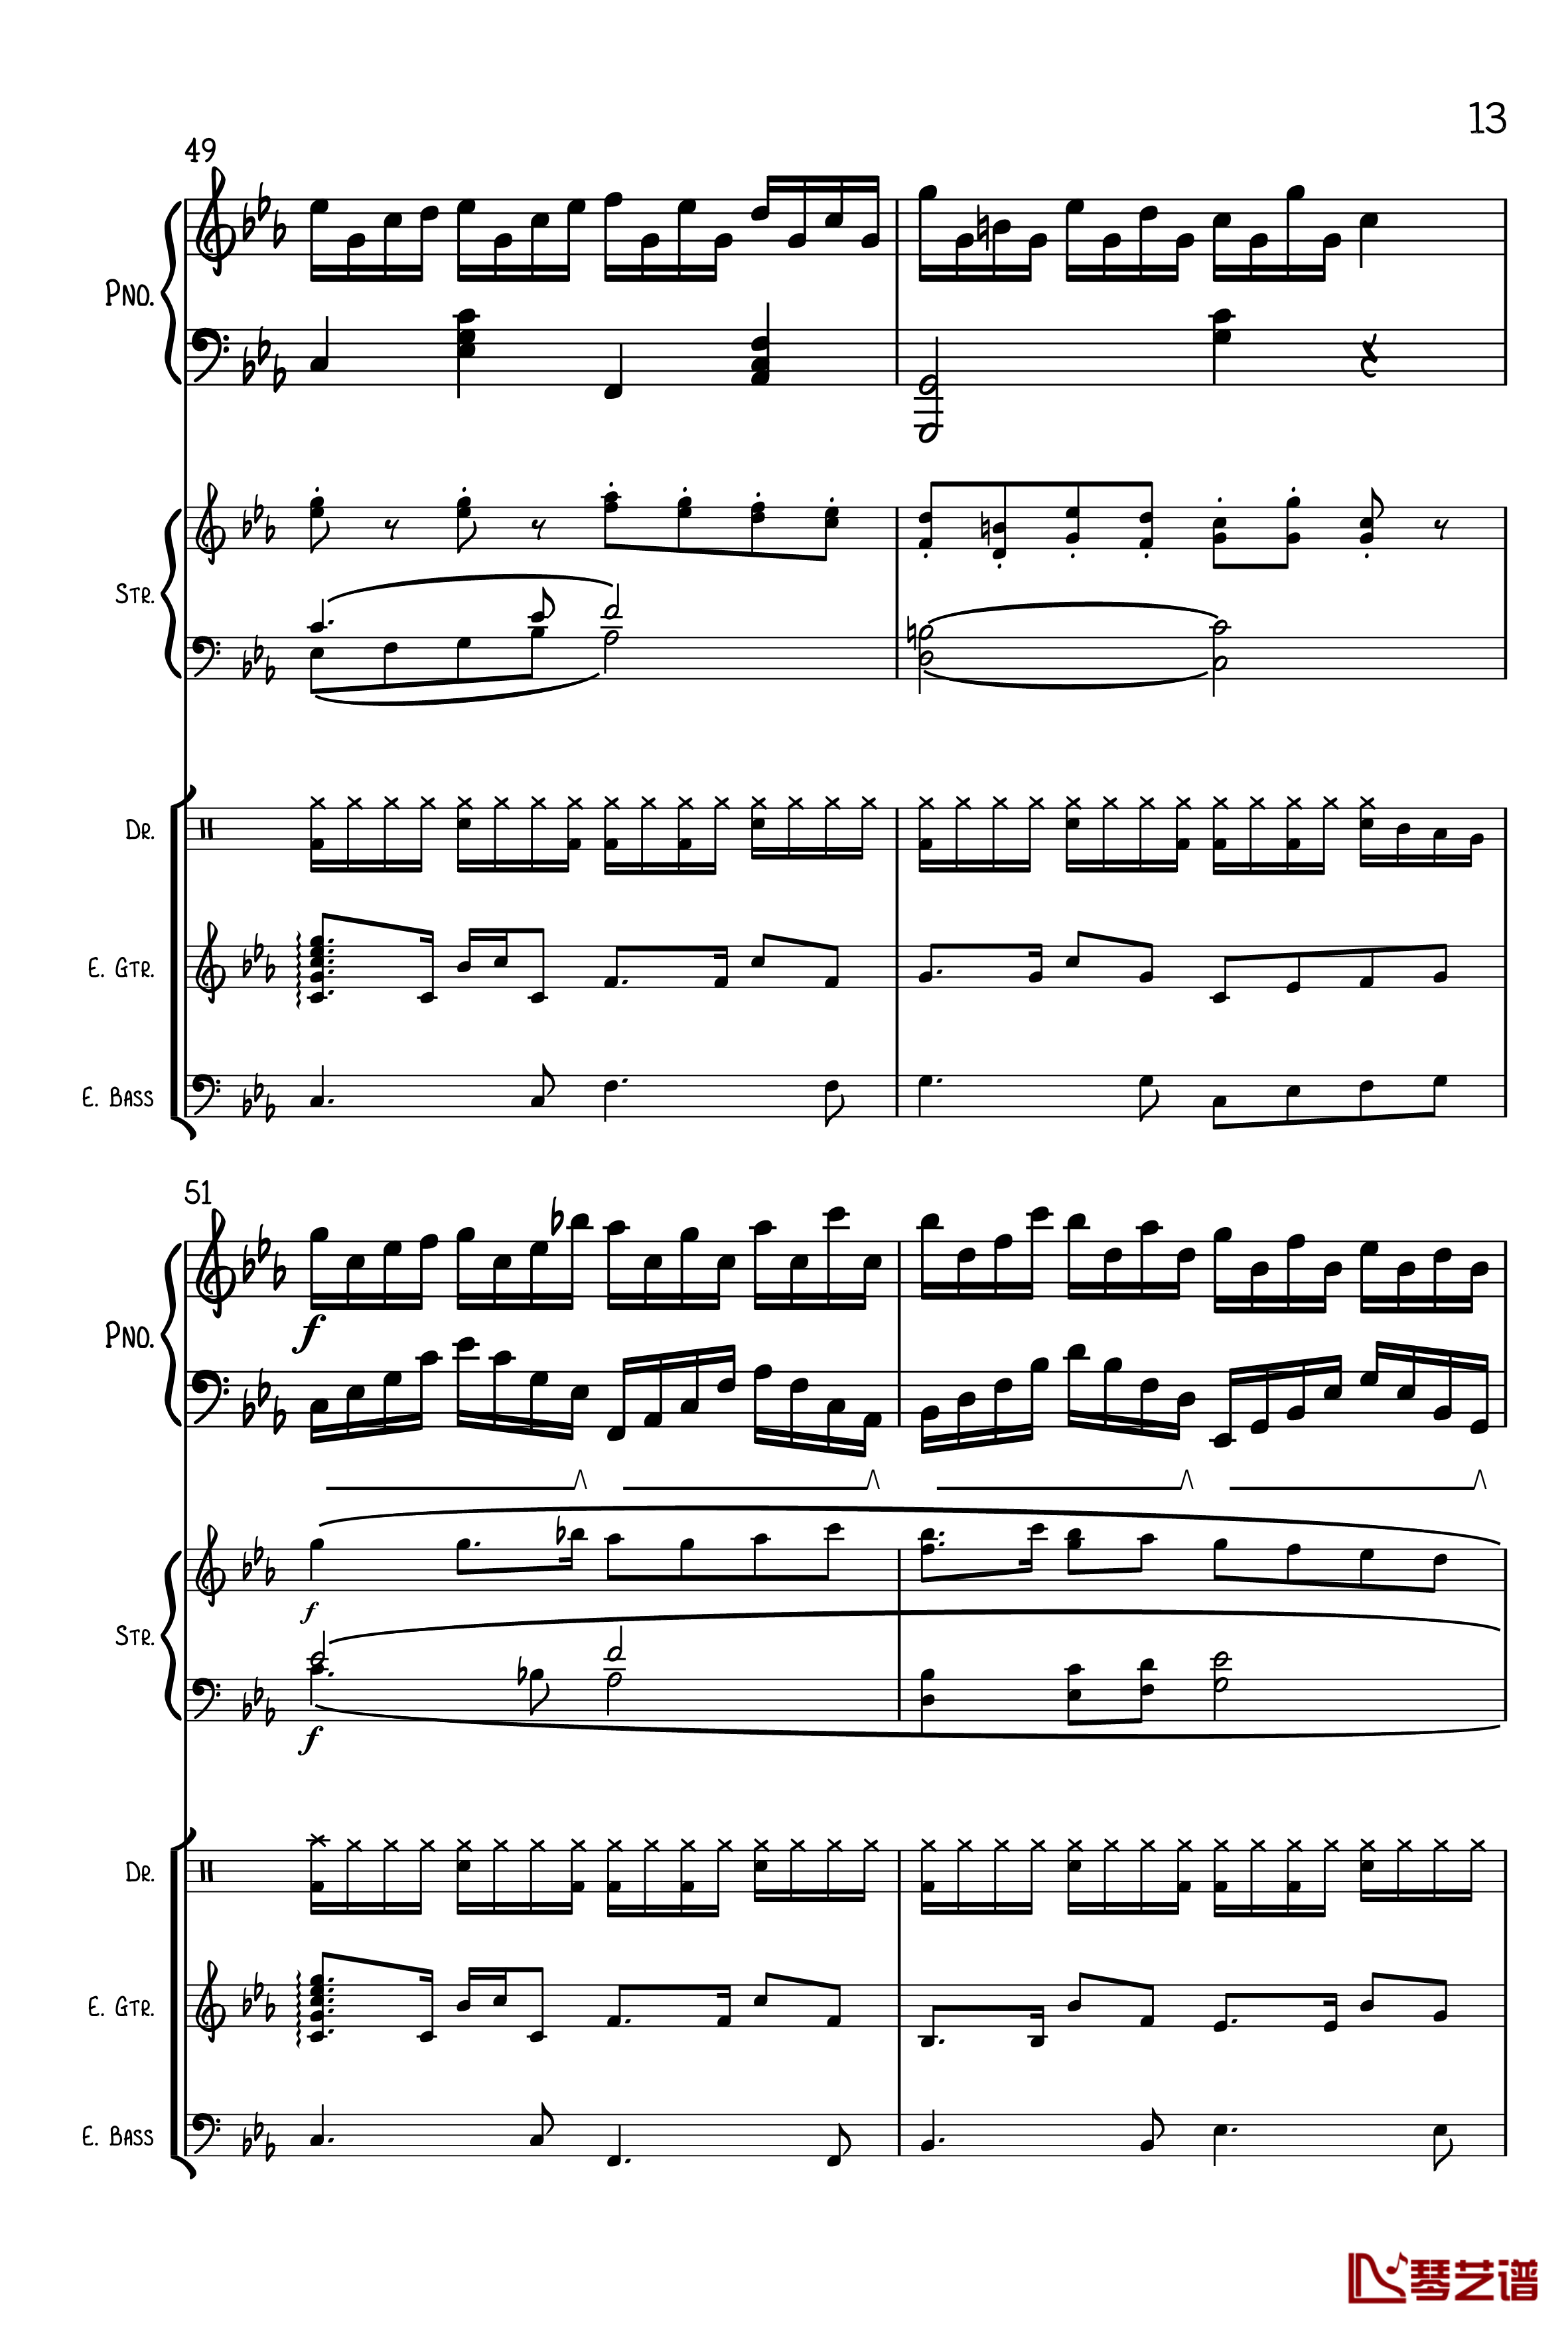 克罗地亚狂想曲钢琴谱-总谱-马克西姆-Maksim·Mrvica13